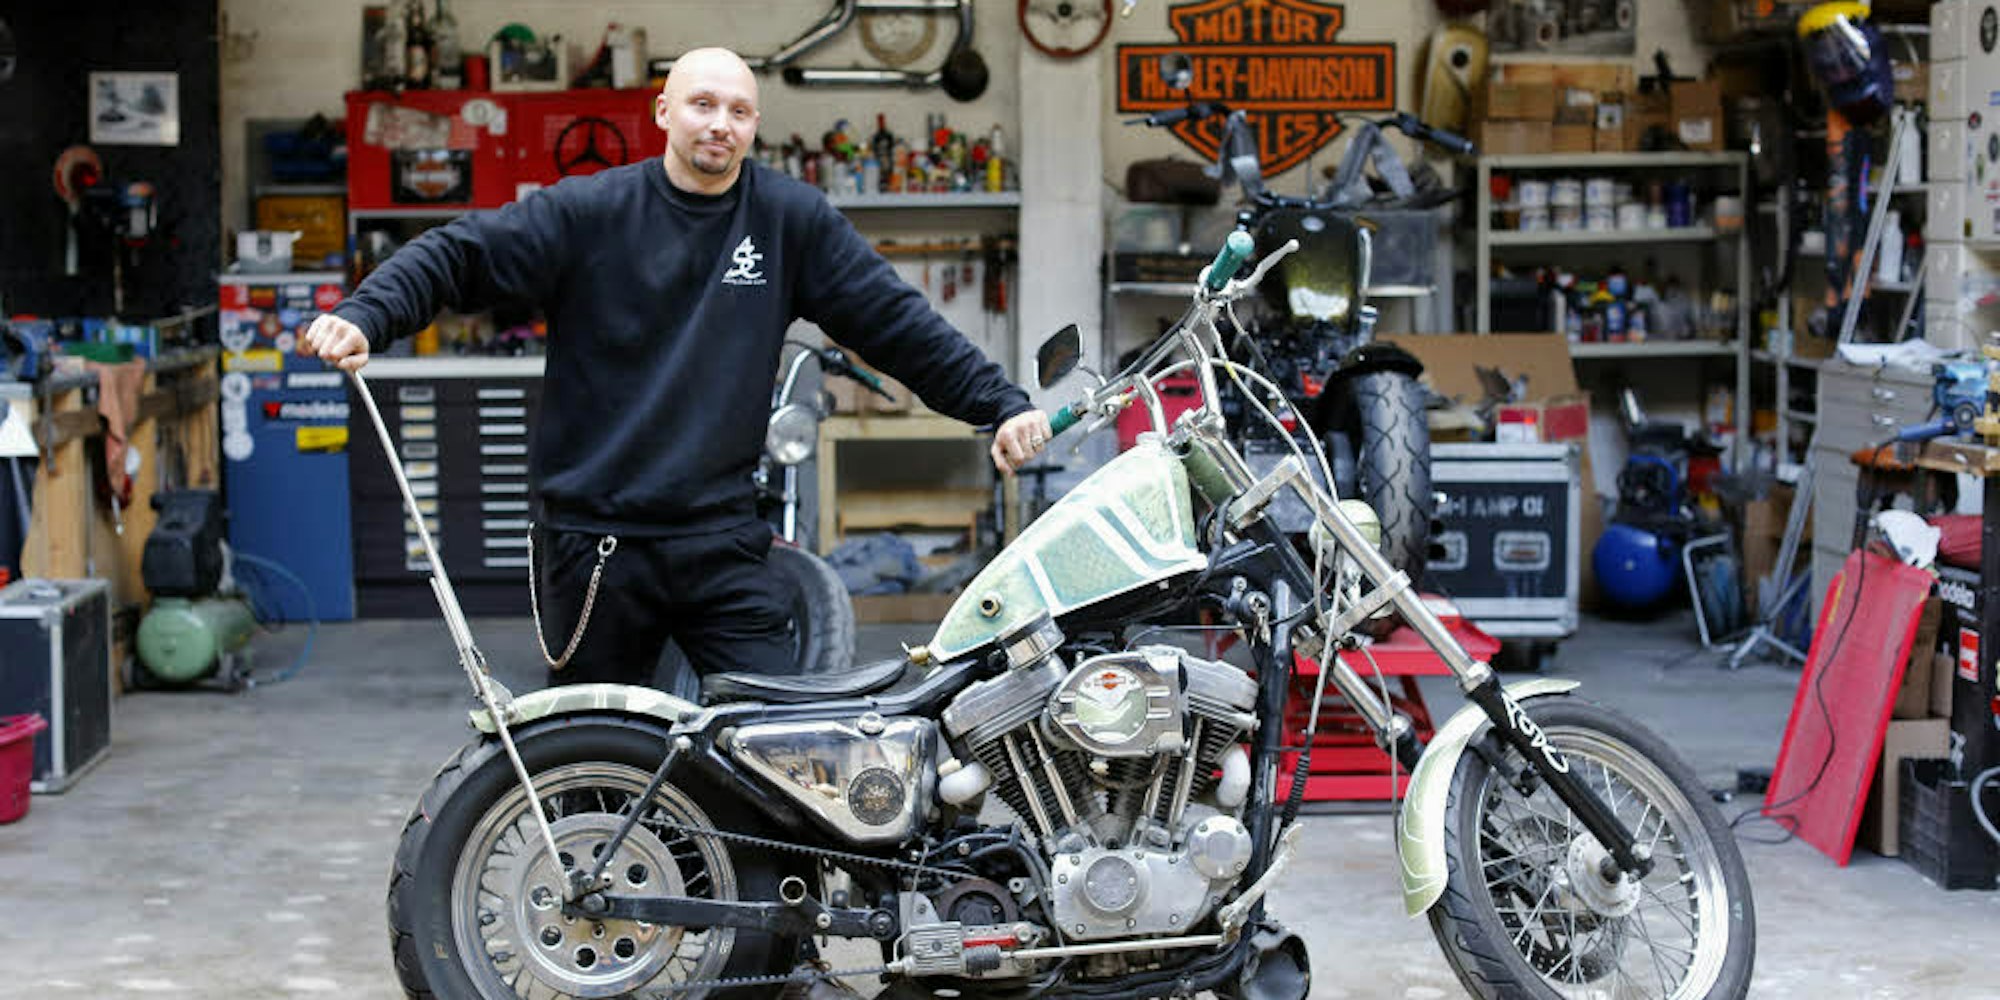 Mit 16 hatte Alex Thielen seine erste Harley, später machte er seine Leidenschaft zu seinem Beruf.